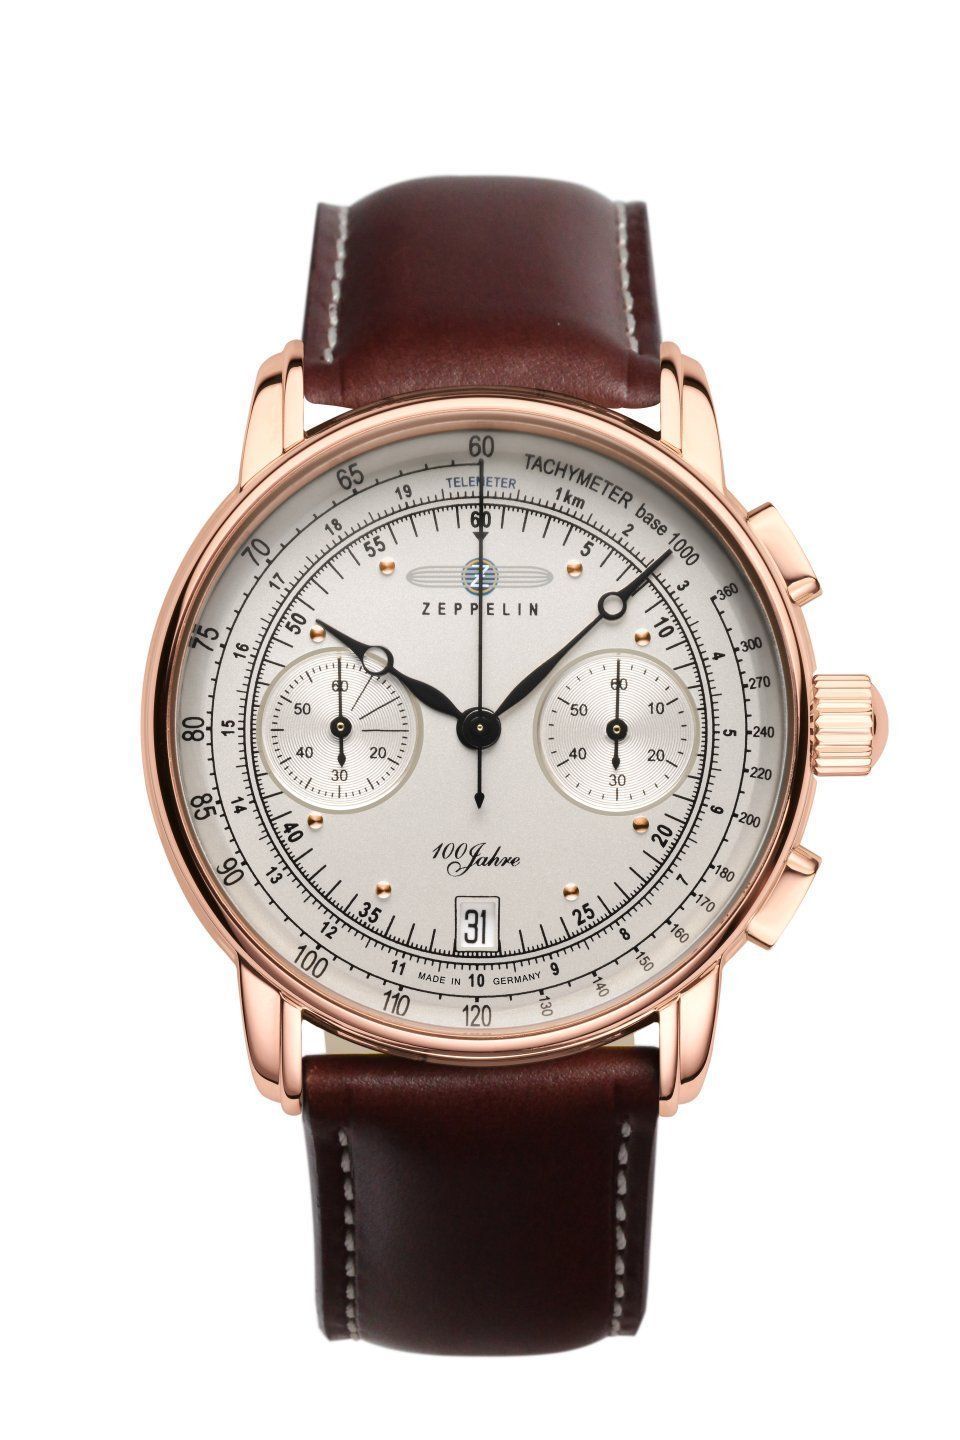 Les montres Zeppelin les plus onéreuses vendues sur eBay ! 